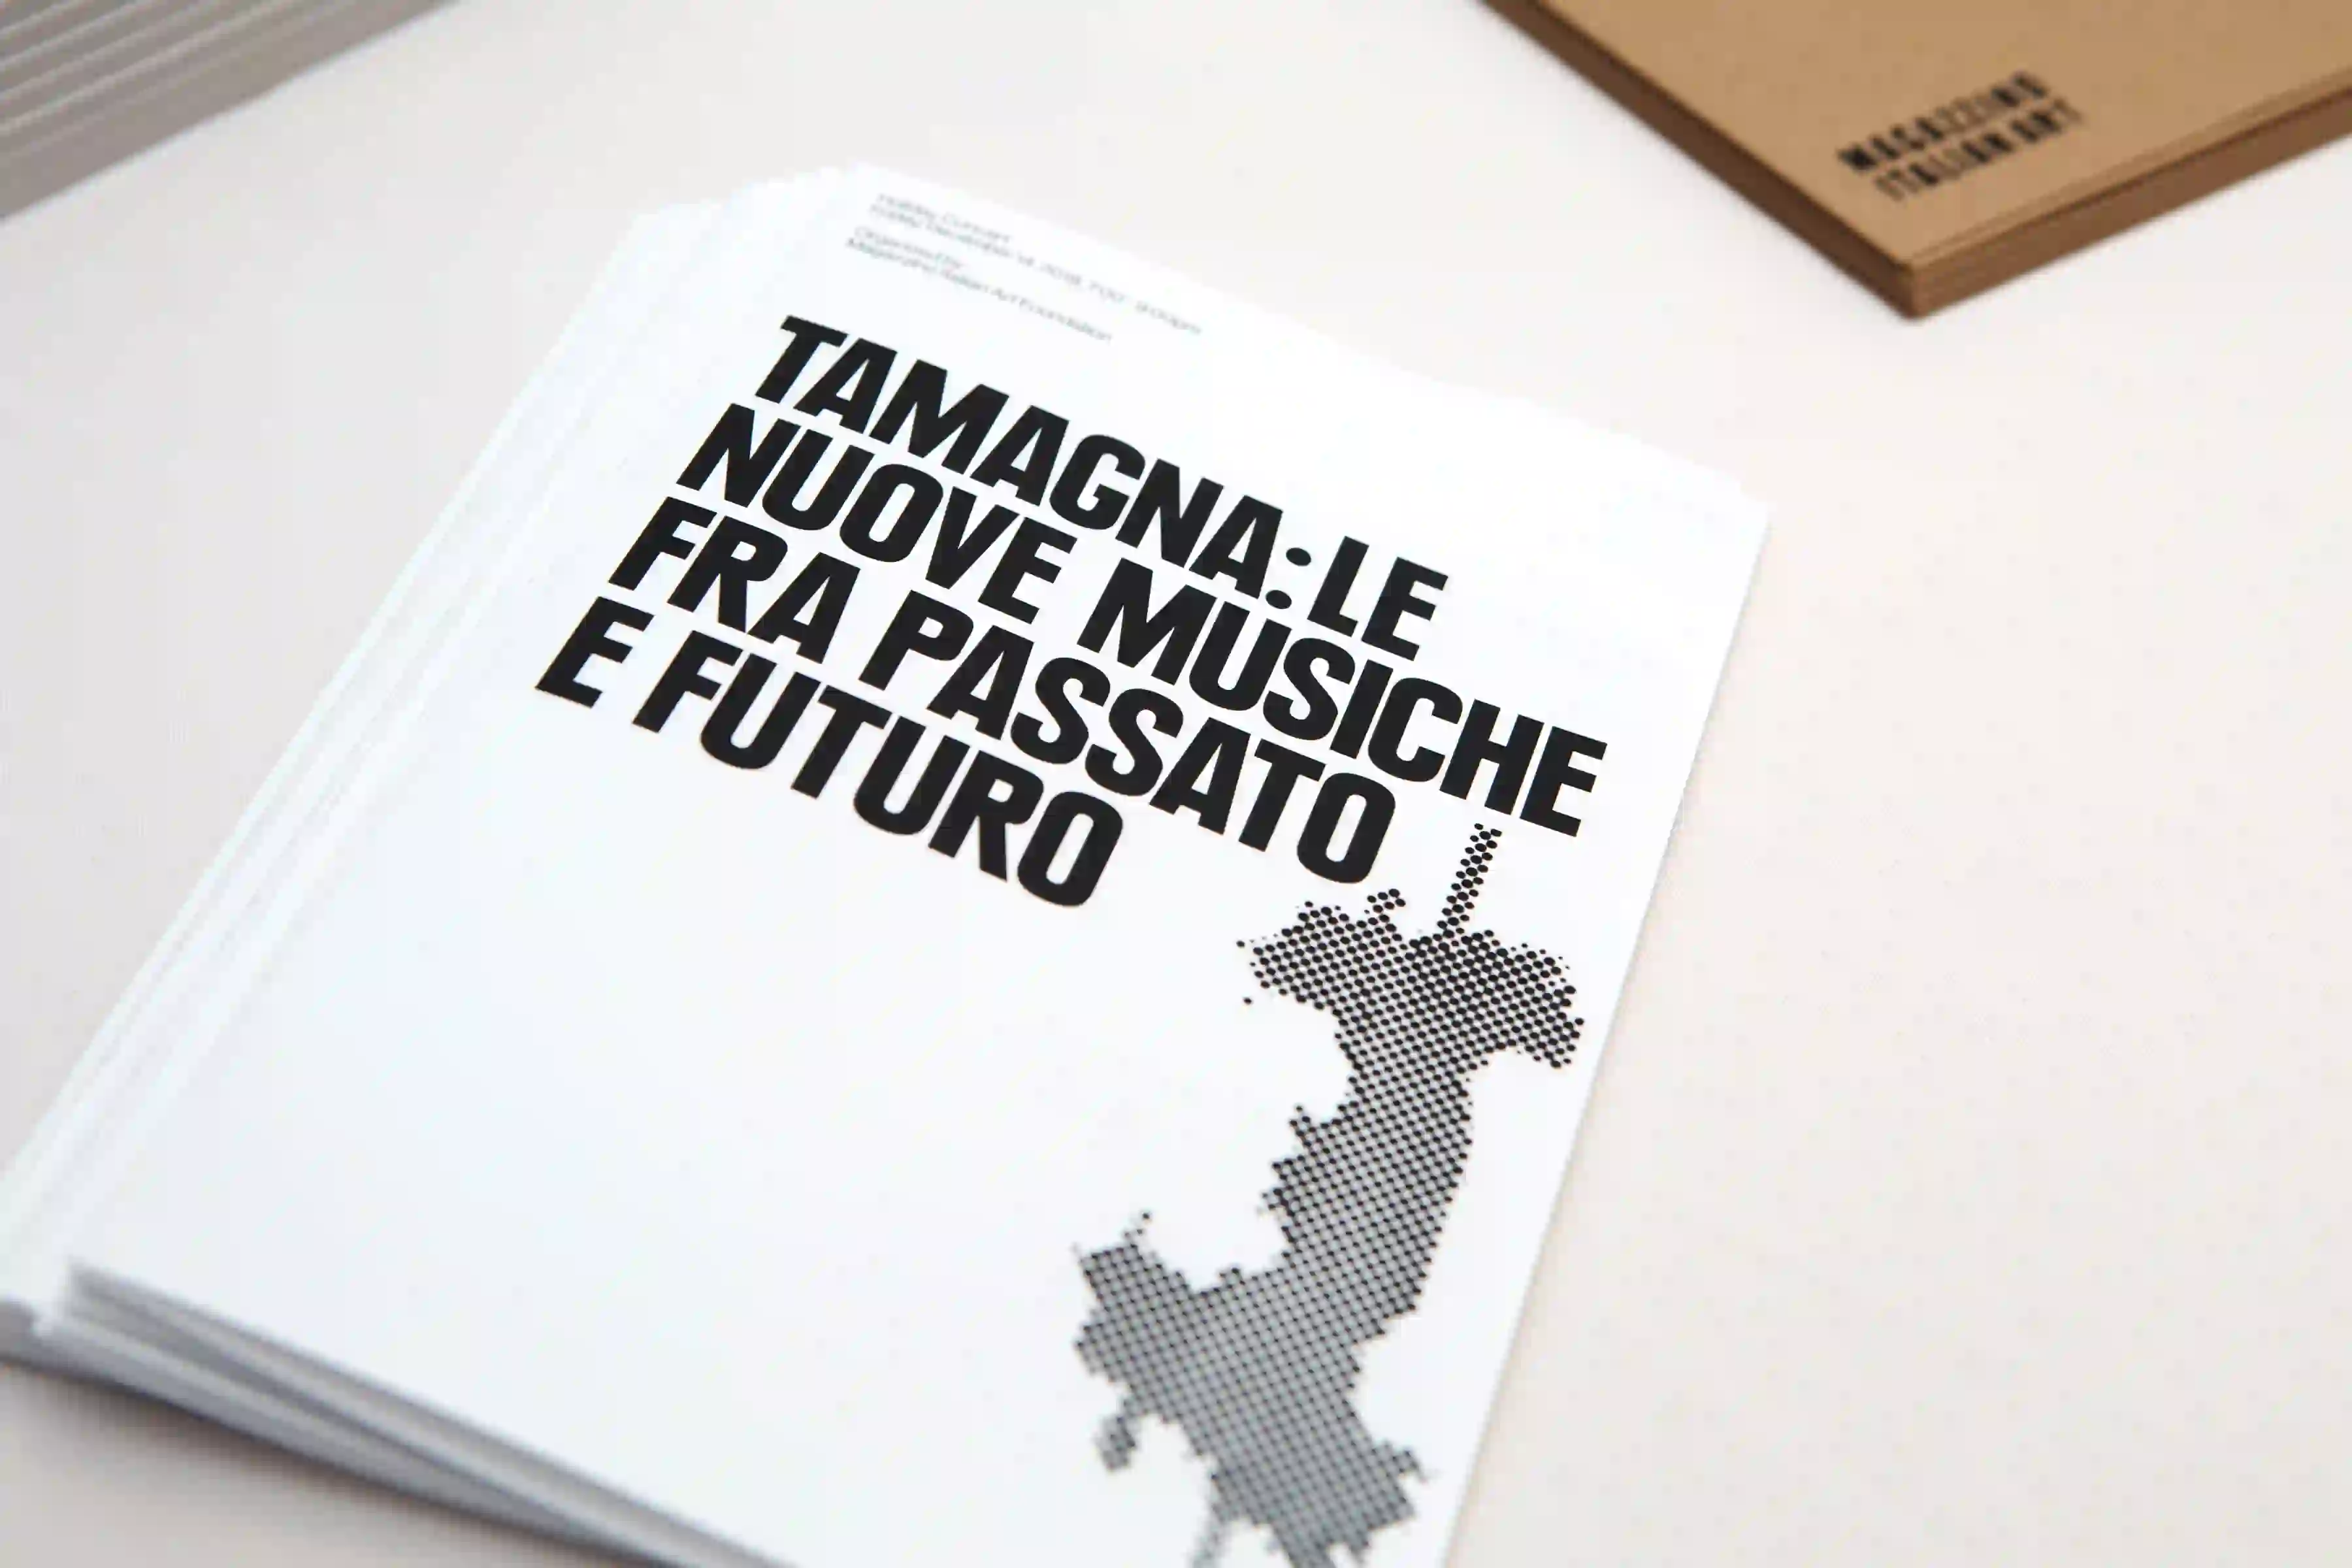 Le Nuove Musiche Fra Passato e Futuro leaflets